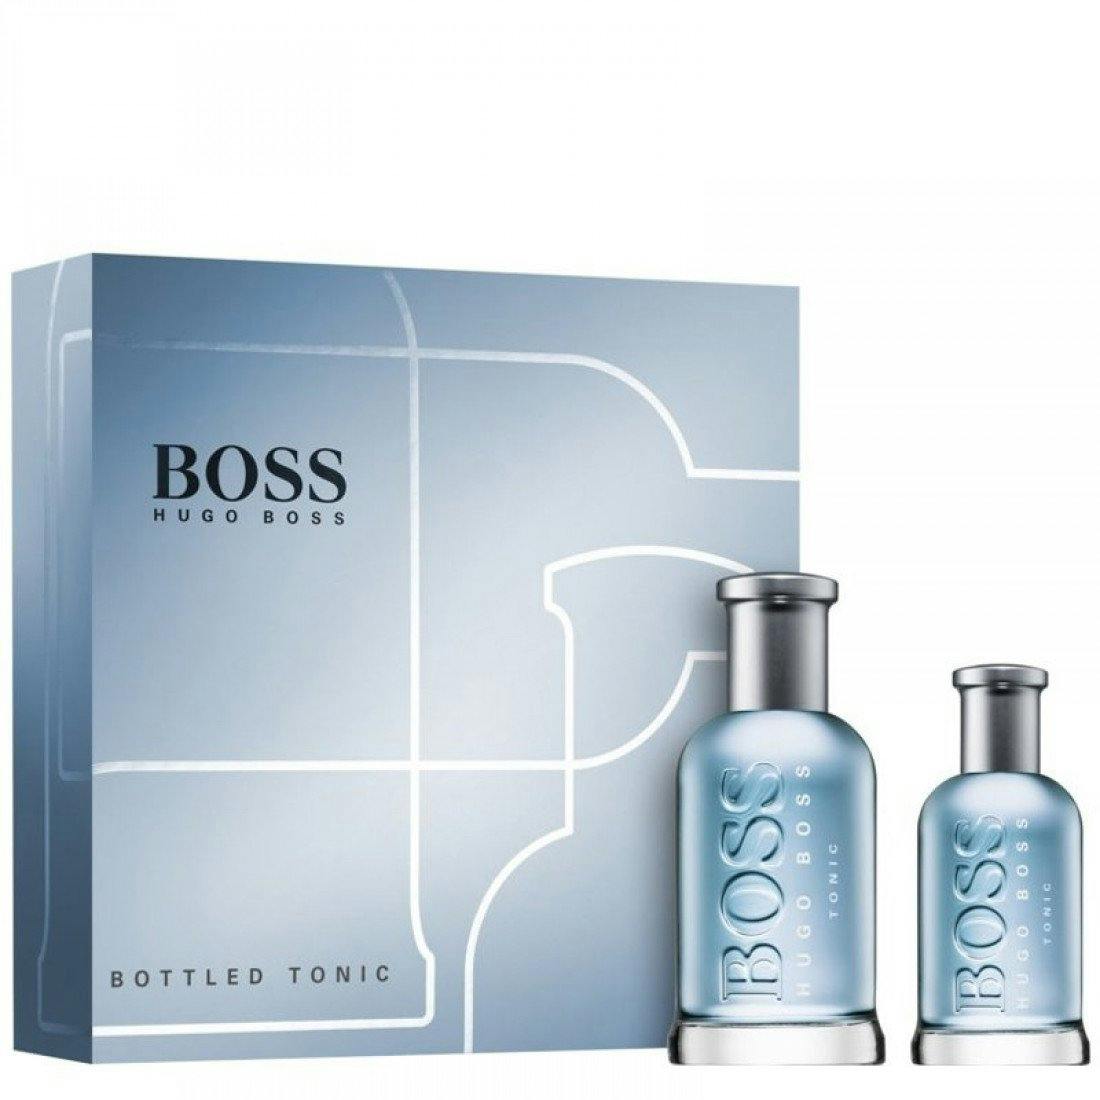 hugo boss mens aftershave gift set